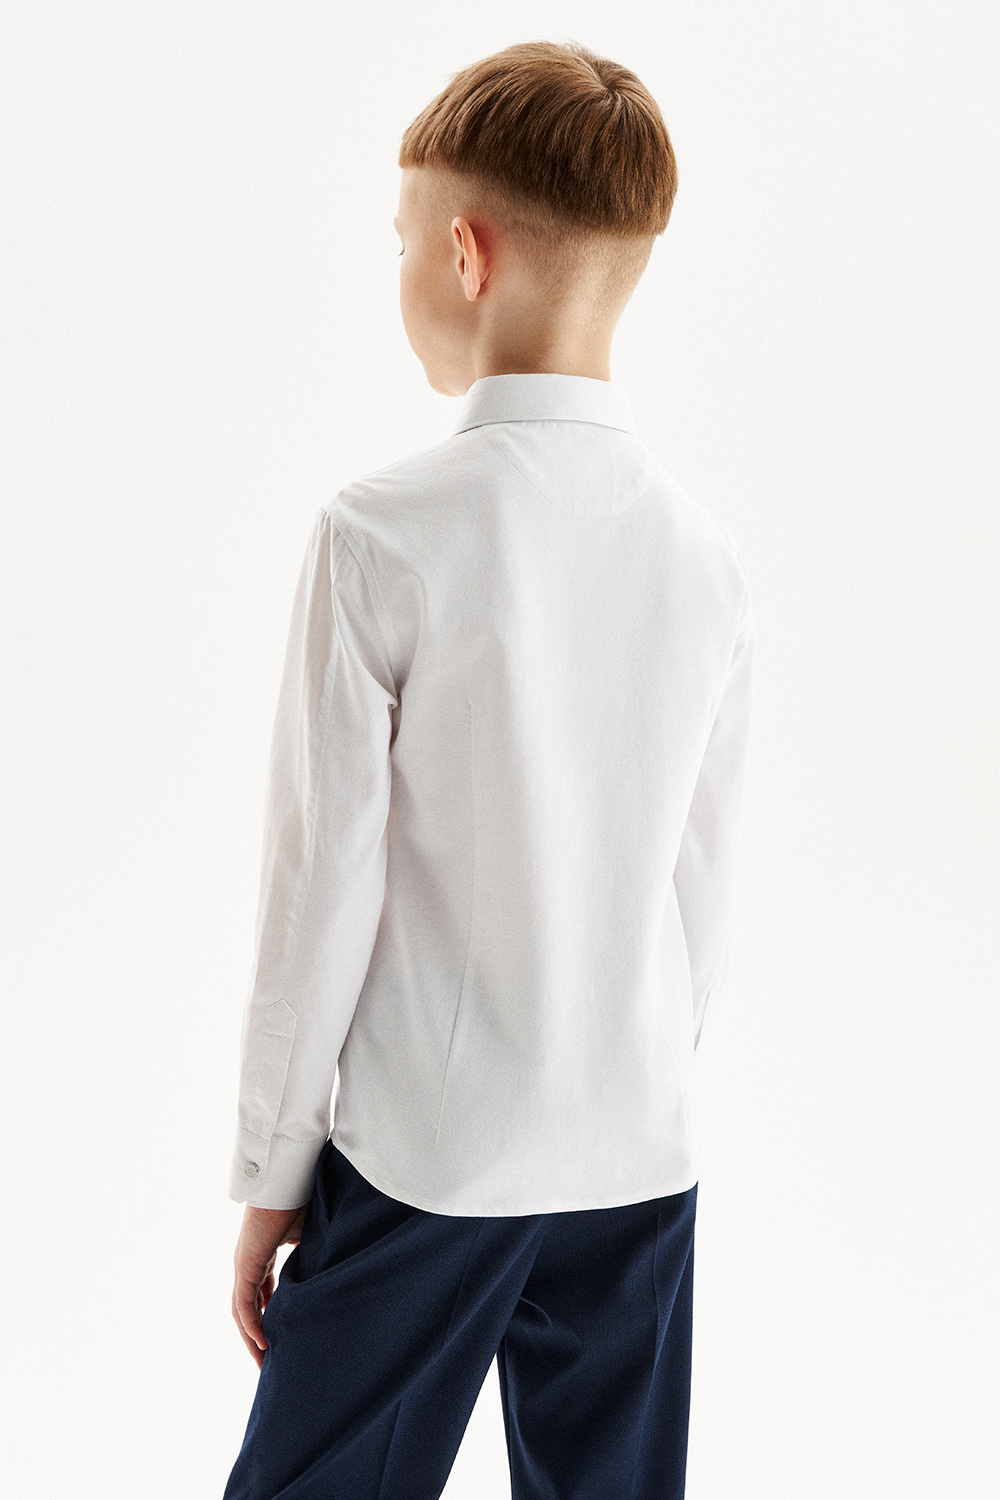 Хлопковая сорочка Slim с трикотажной спинкой на кнопках (SSFSB-328-14853-212) Silver Spoon